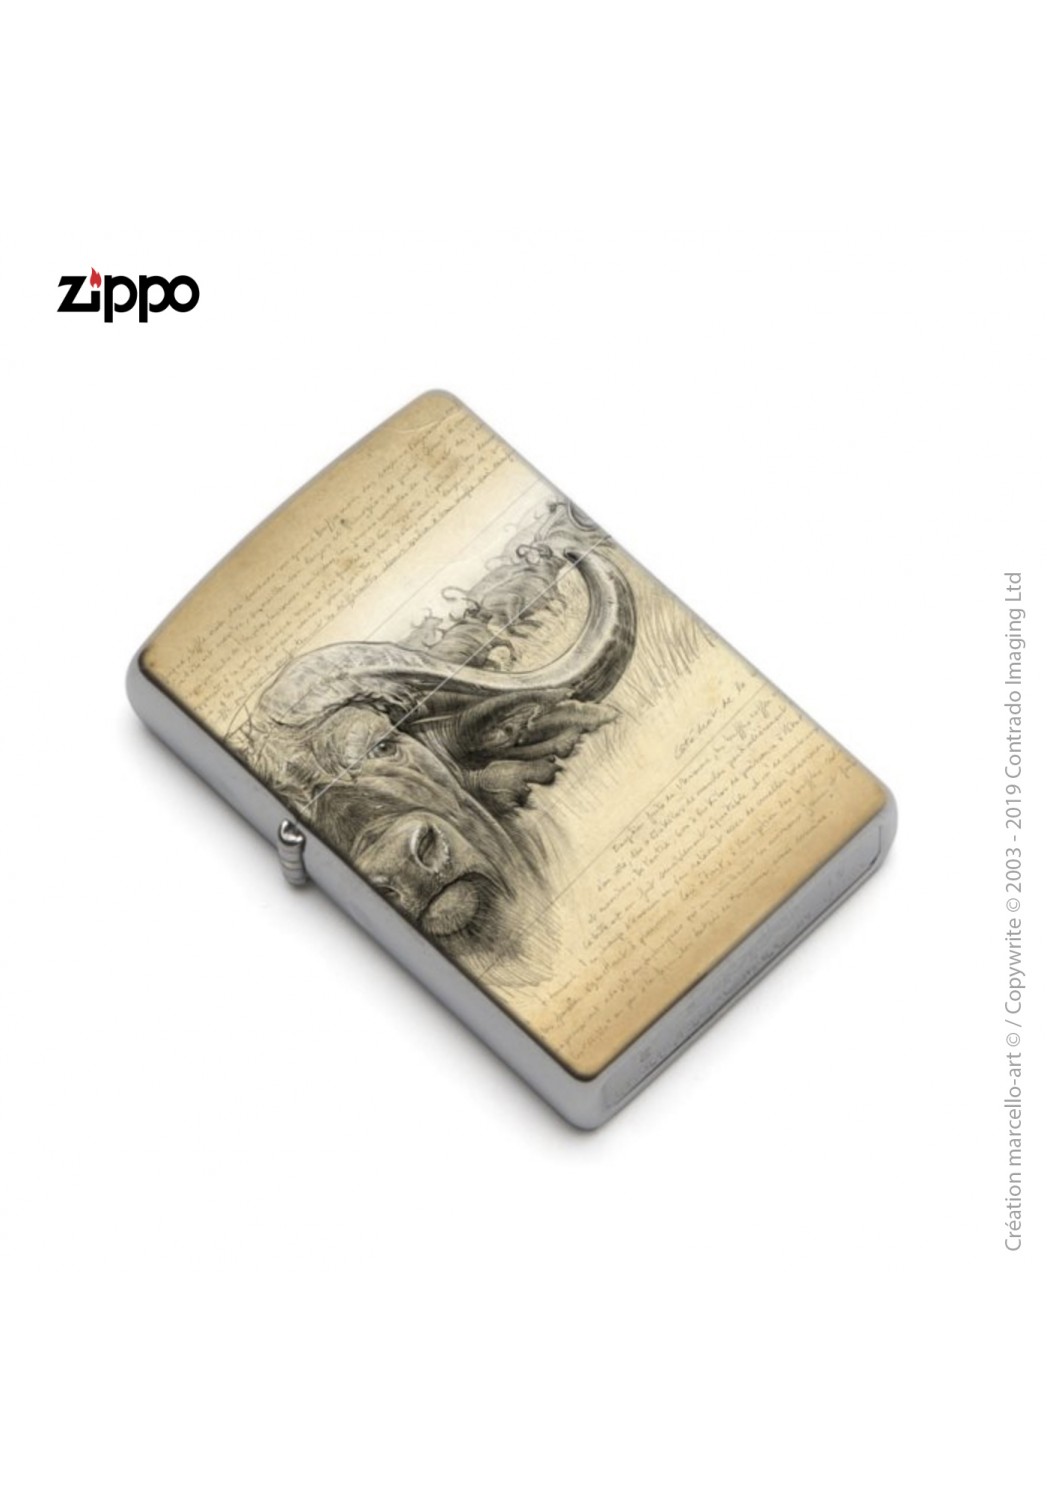 Marcello-art: Decoration accessoiries Zippo 274 cap buffalo engraving